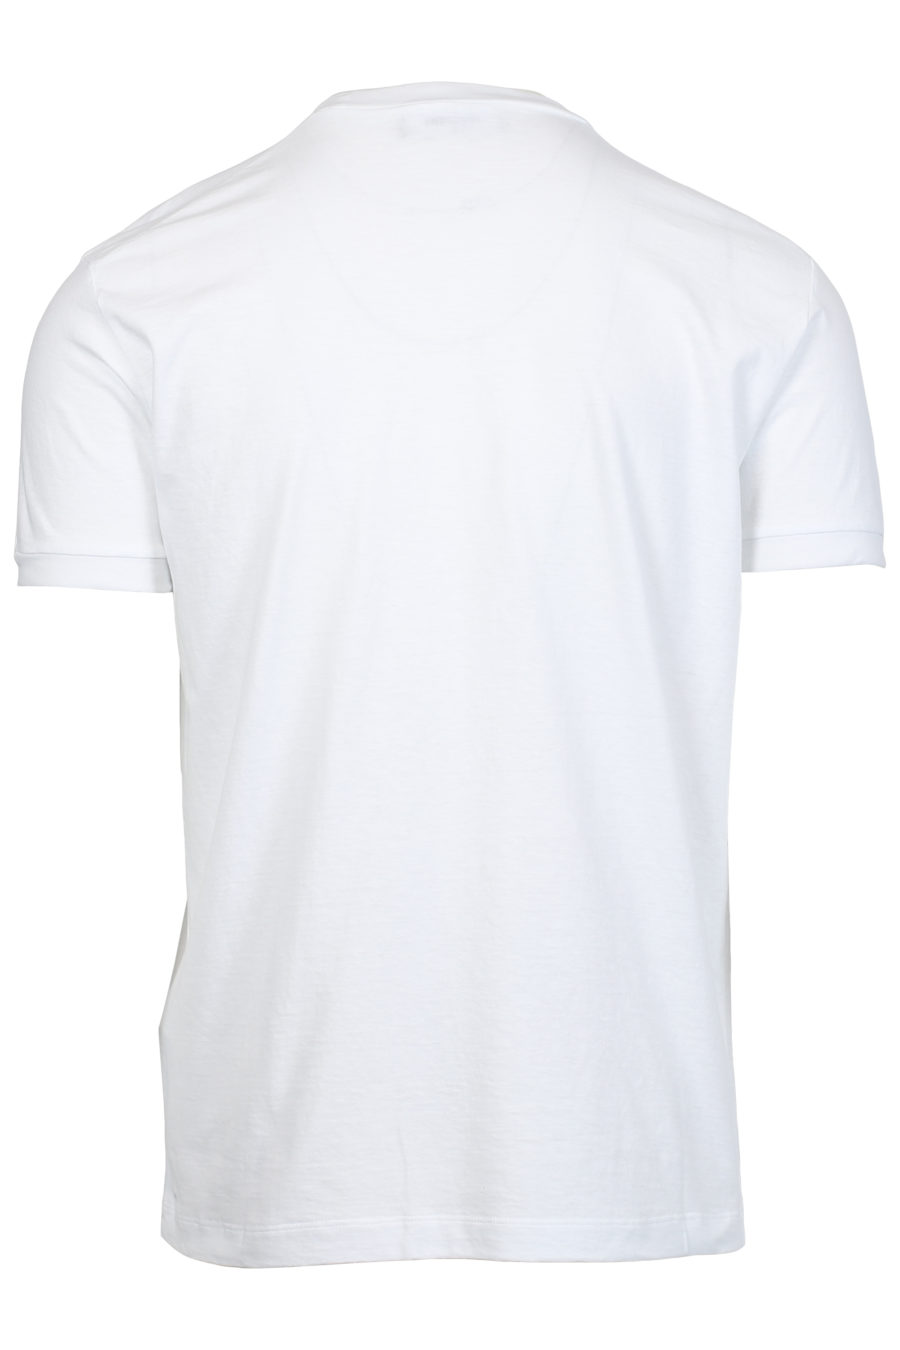 Camiseta blanca con estampado bandera - IMG 2396